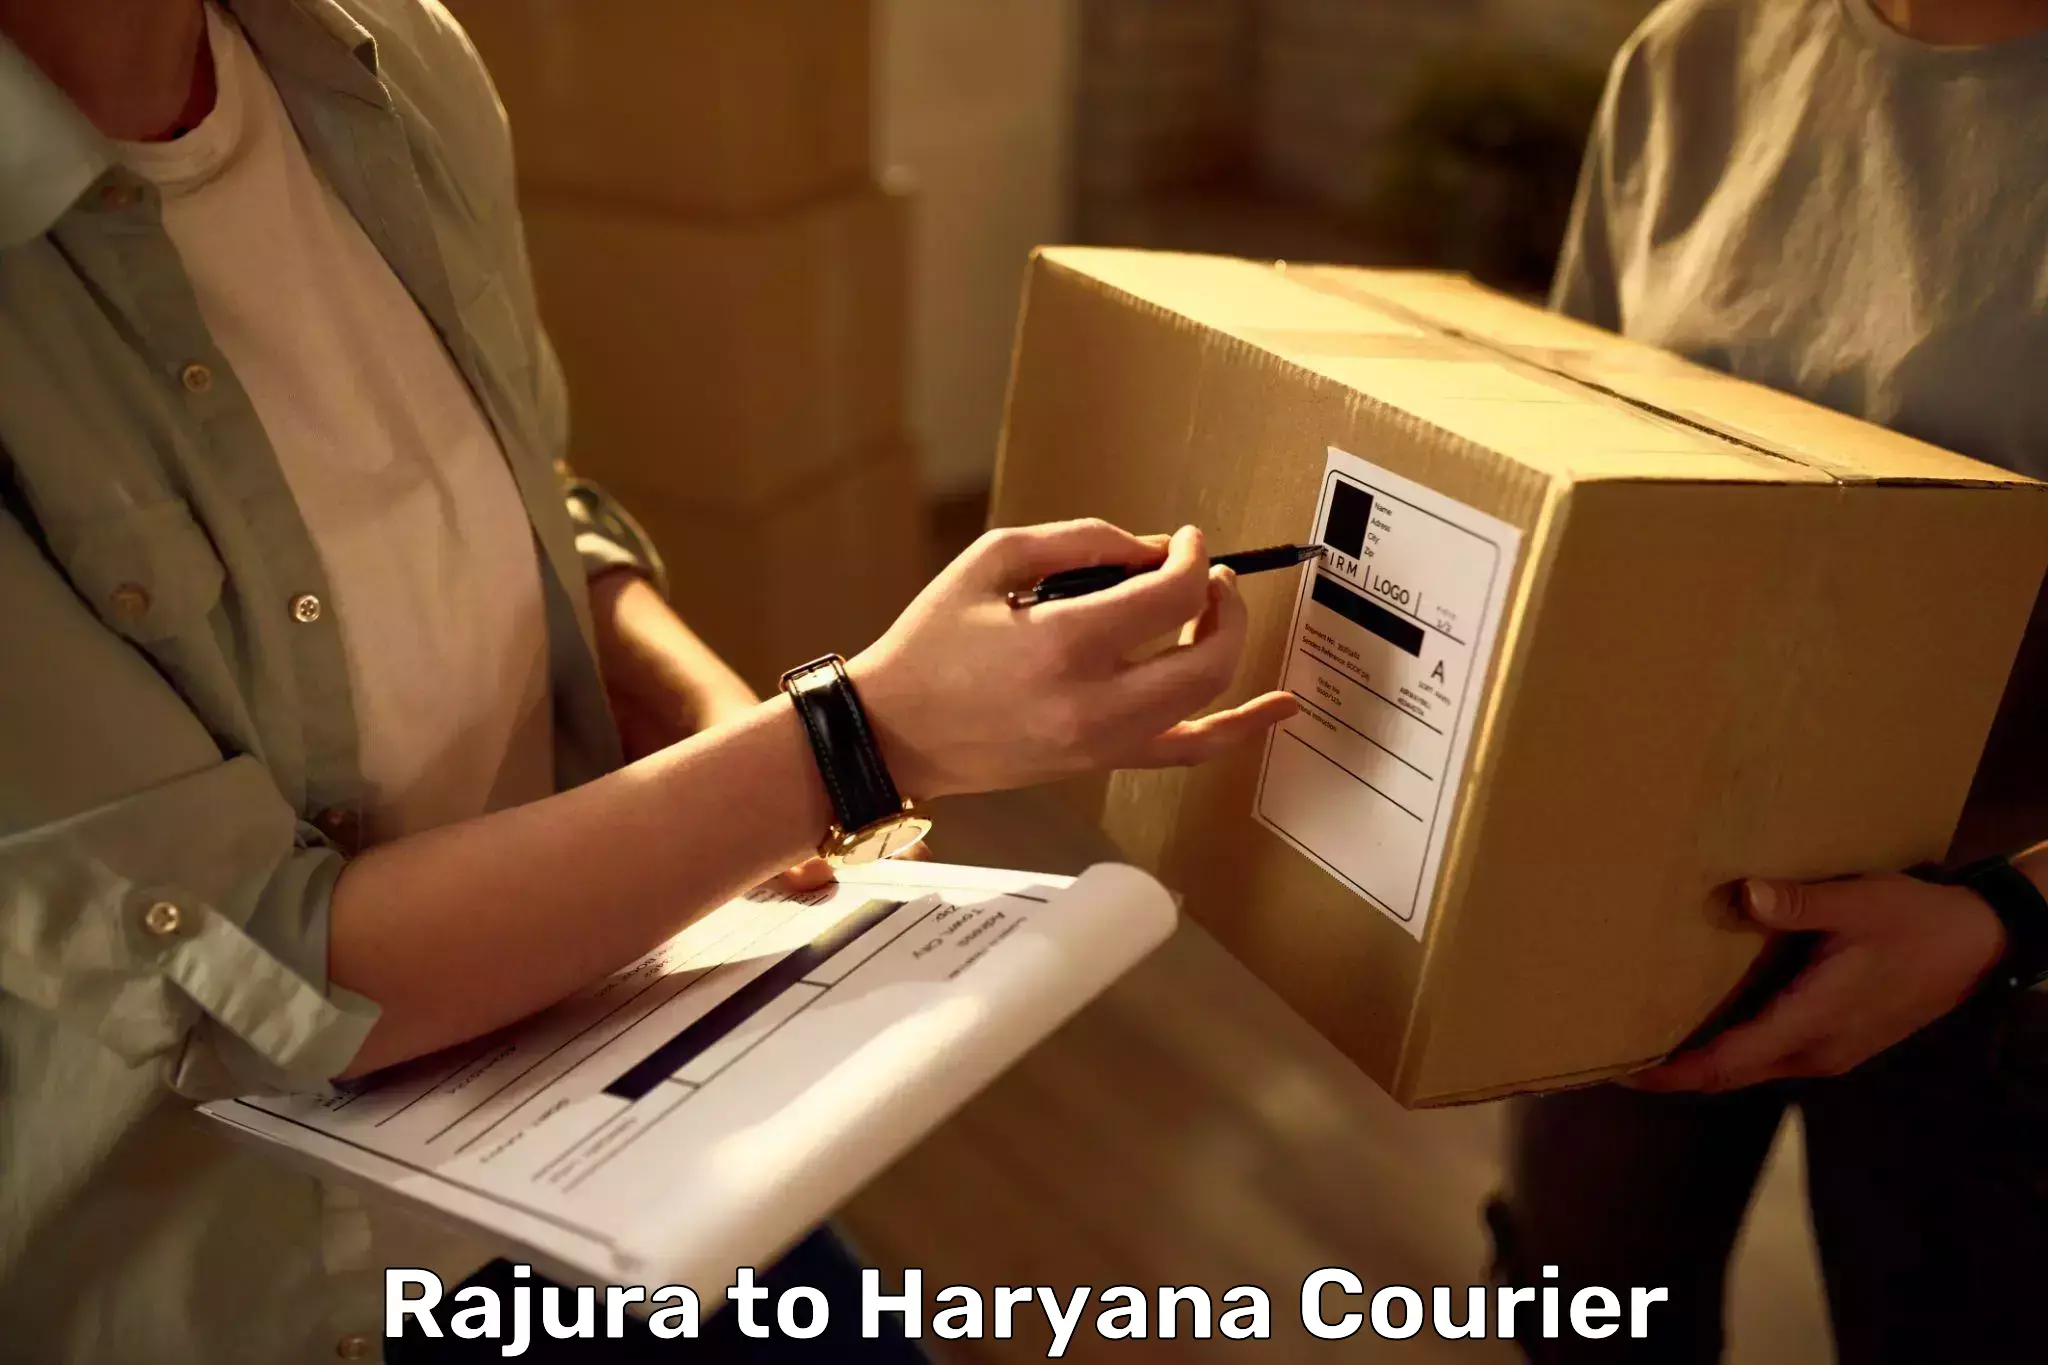 Luggage forwarding service Rajura to Chaudhary Charan Singh Haryana Agricultural University Hisar